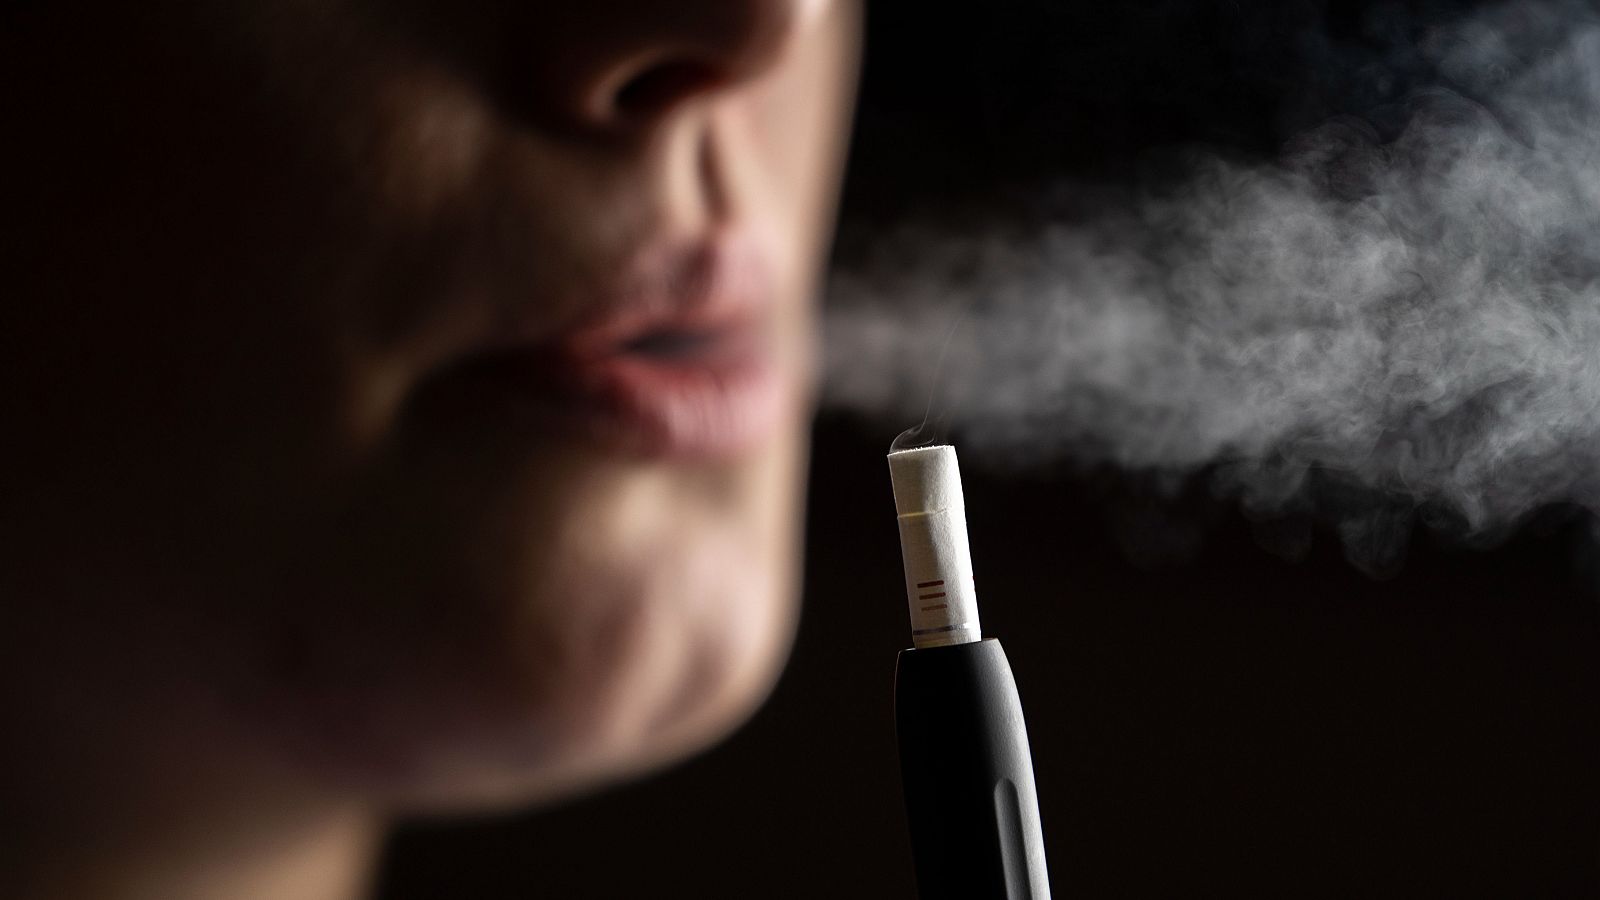 Tabaco calentado: una mujer utilizando un dispositivo electrónico para calentar tabaco